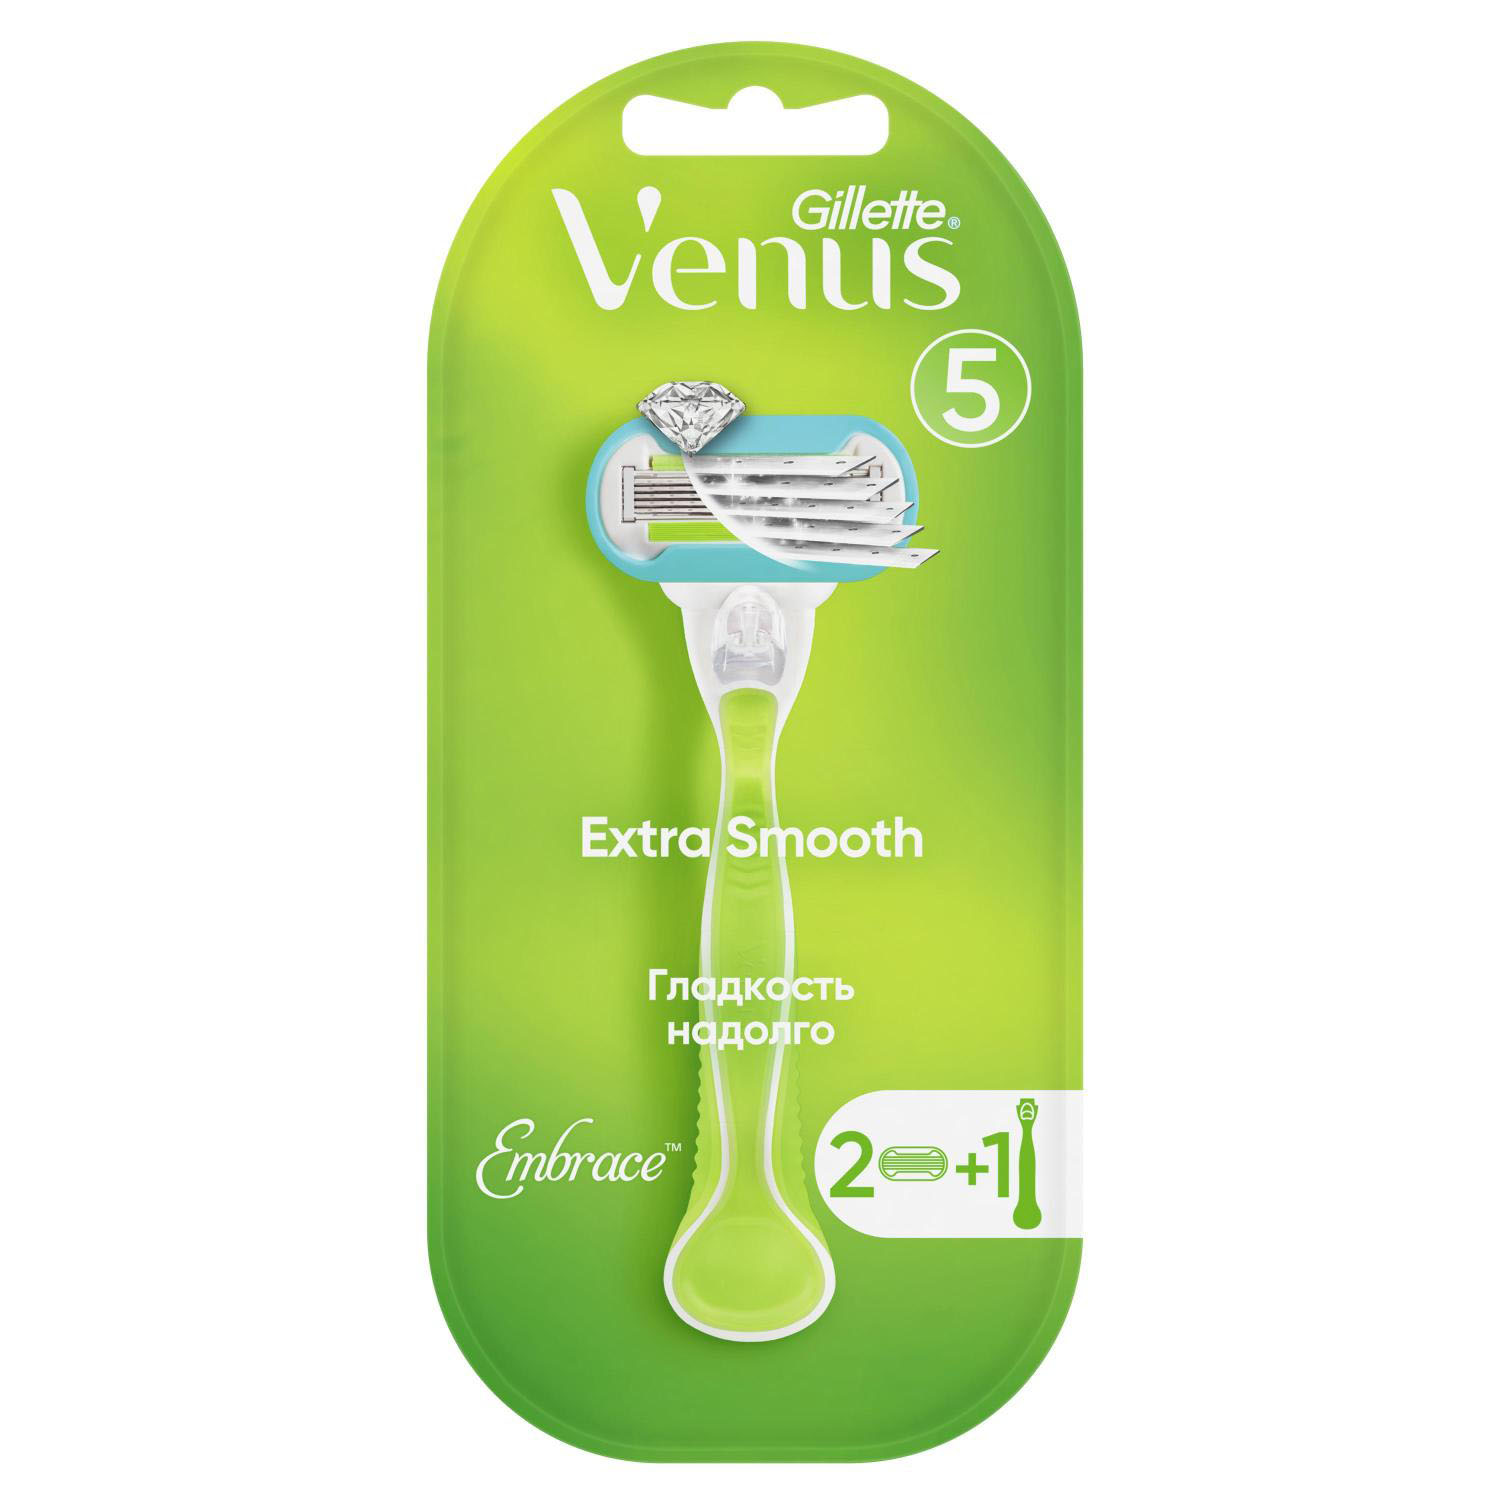 Жиллетт станок для бритья Венус Эмбрейс +2кассеты